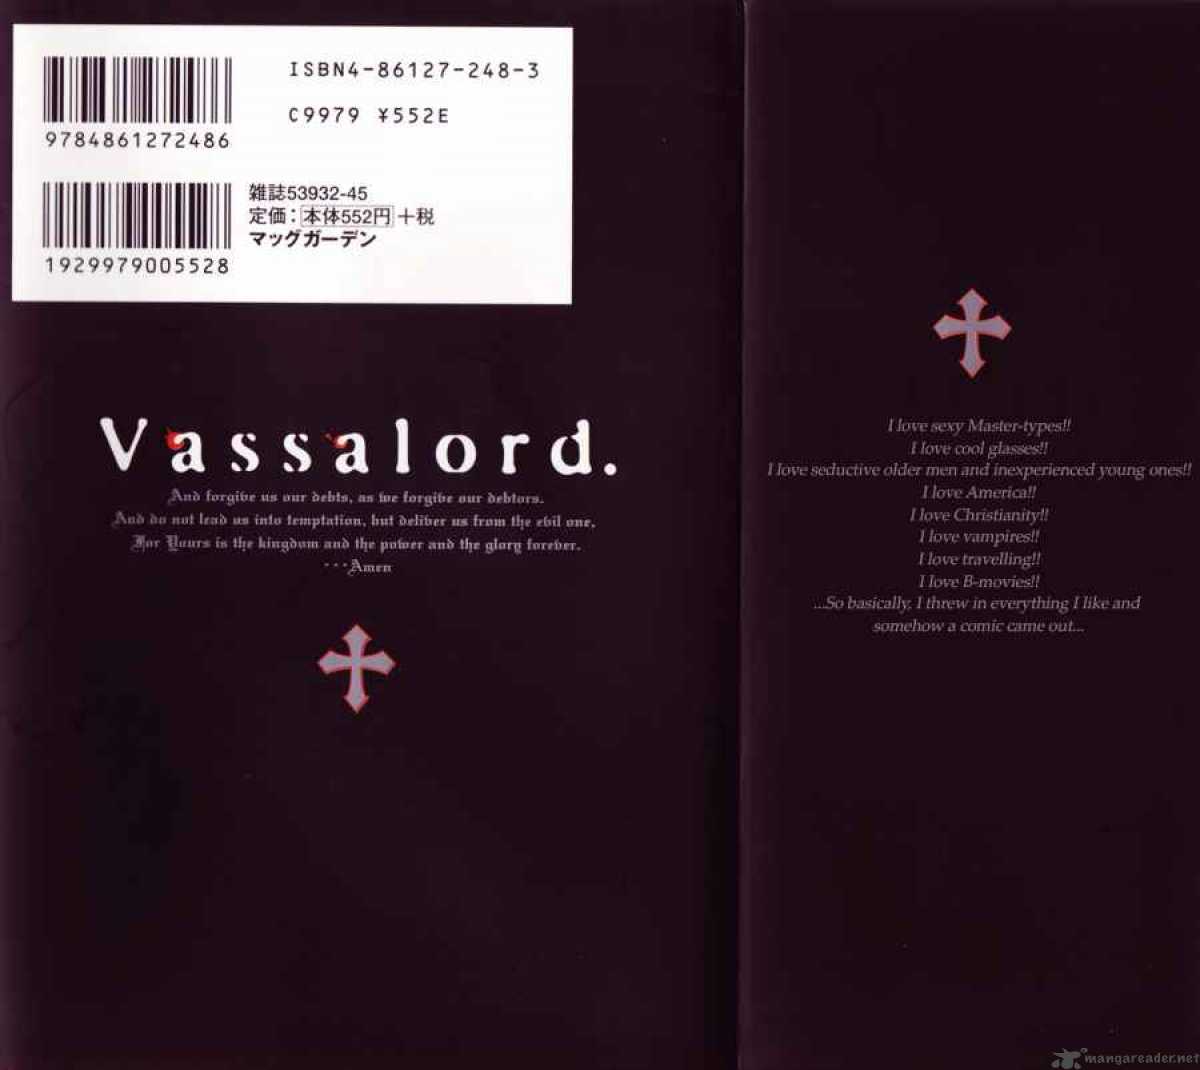 vassalord_1_3